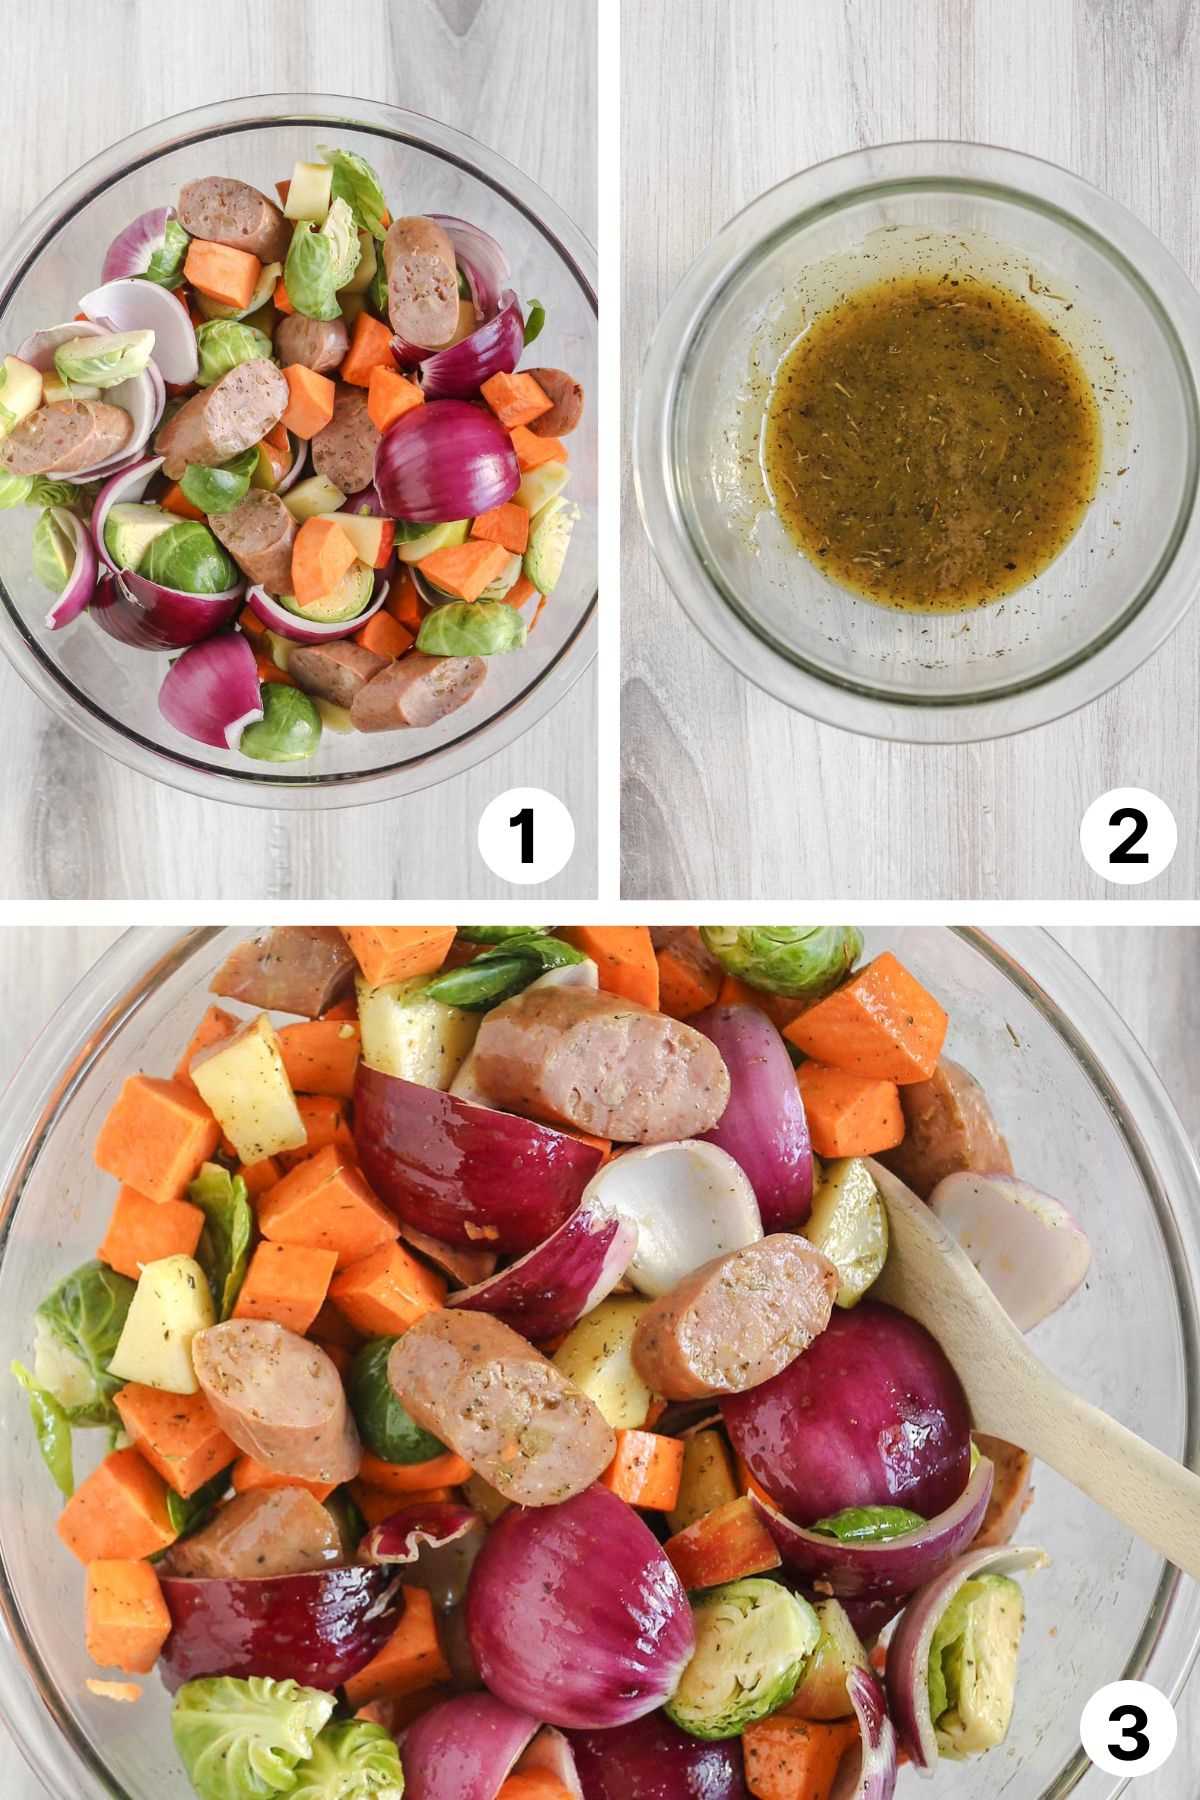 Three quadrants showing chopped veggies /sausage, marinade, and veggies/sausage mixed with marinade.